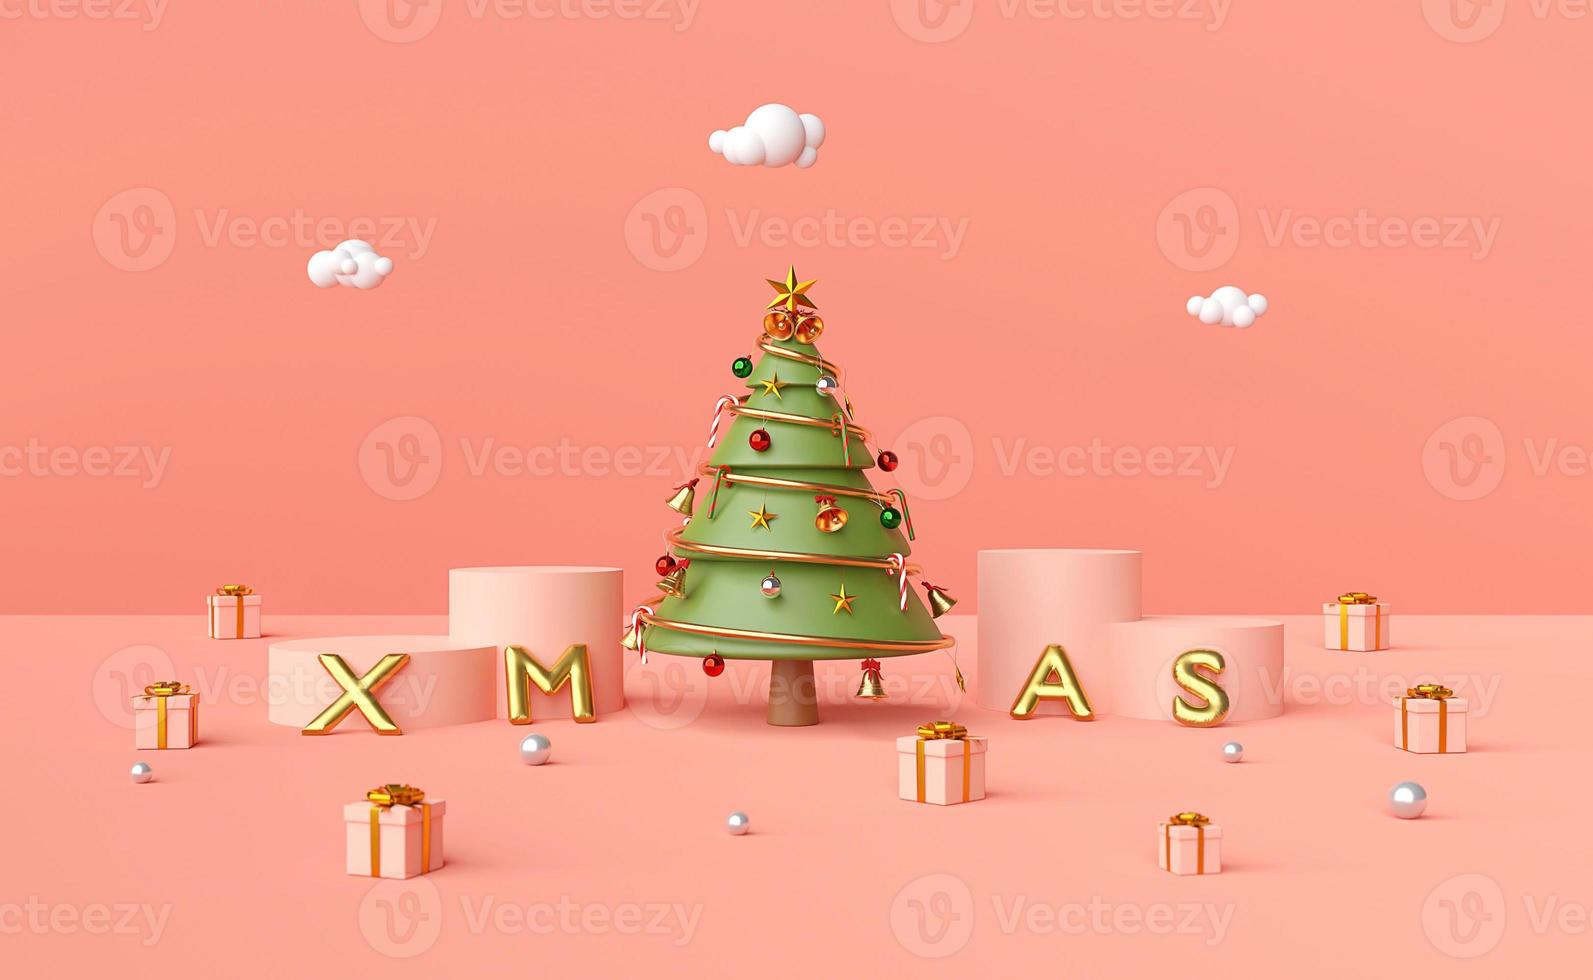 god jul och gott nytt år, julgran på podiet med julballong och julpynt på en rosa bakgrund, 3D -rendering foto